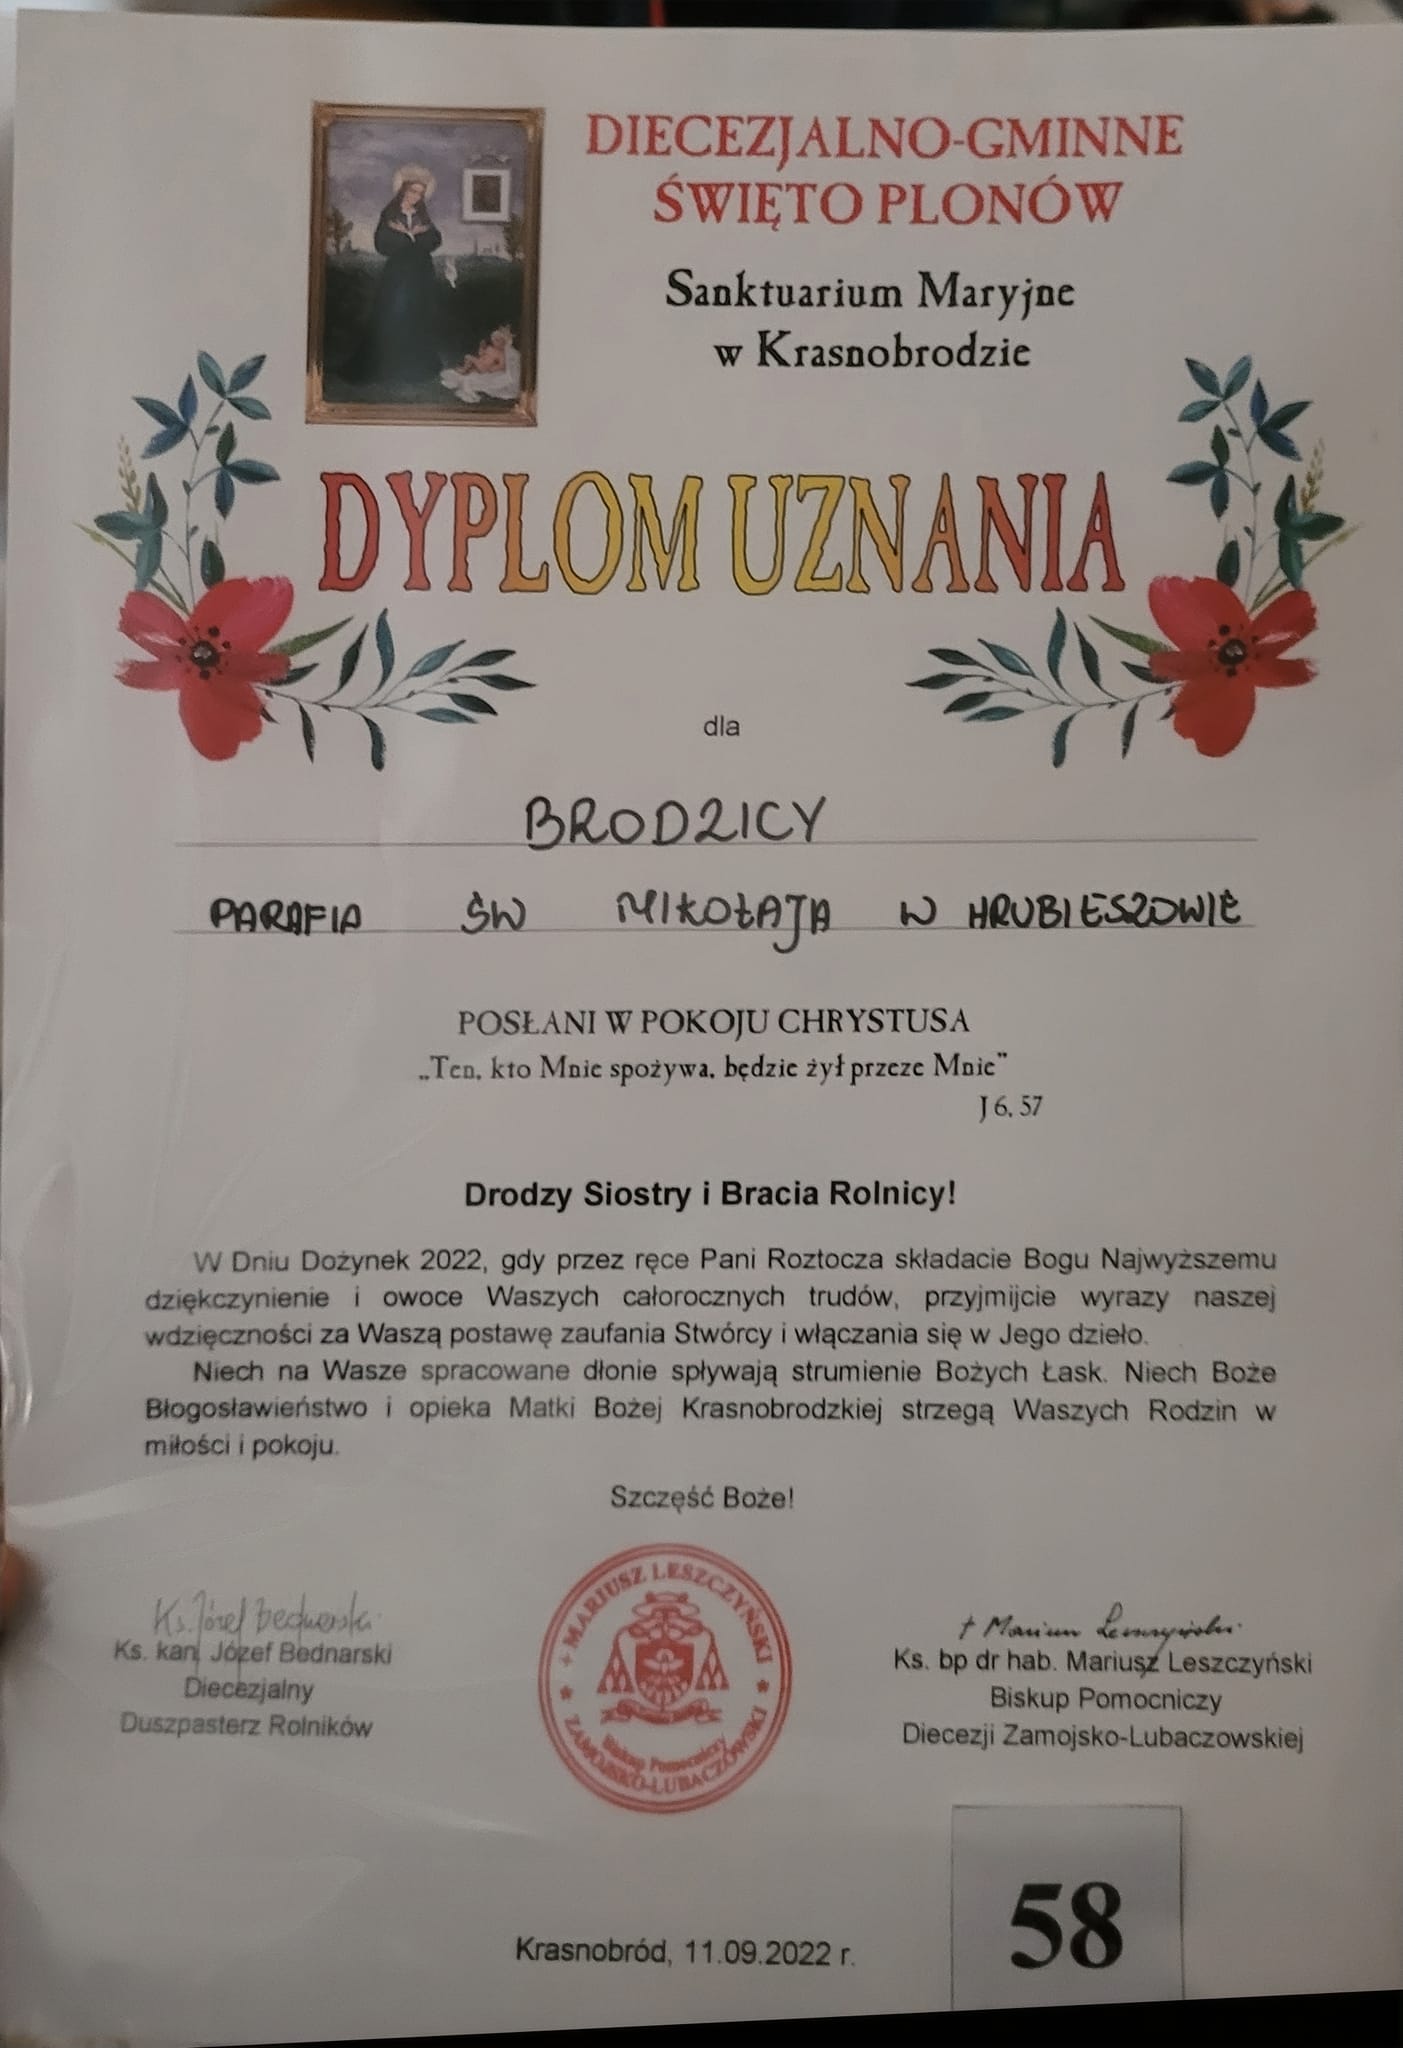 11 września 2022 r. delegacja Sołectwa Brodzica reprezentowała Parafię Św. Mikołaja w Hrubieszowie na diecezjalnych Dożynkach w Krasnobrodzie.